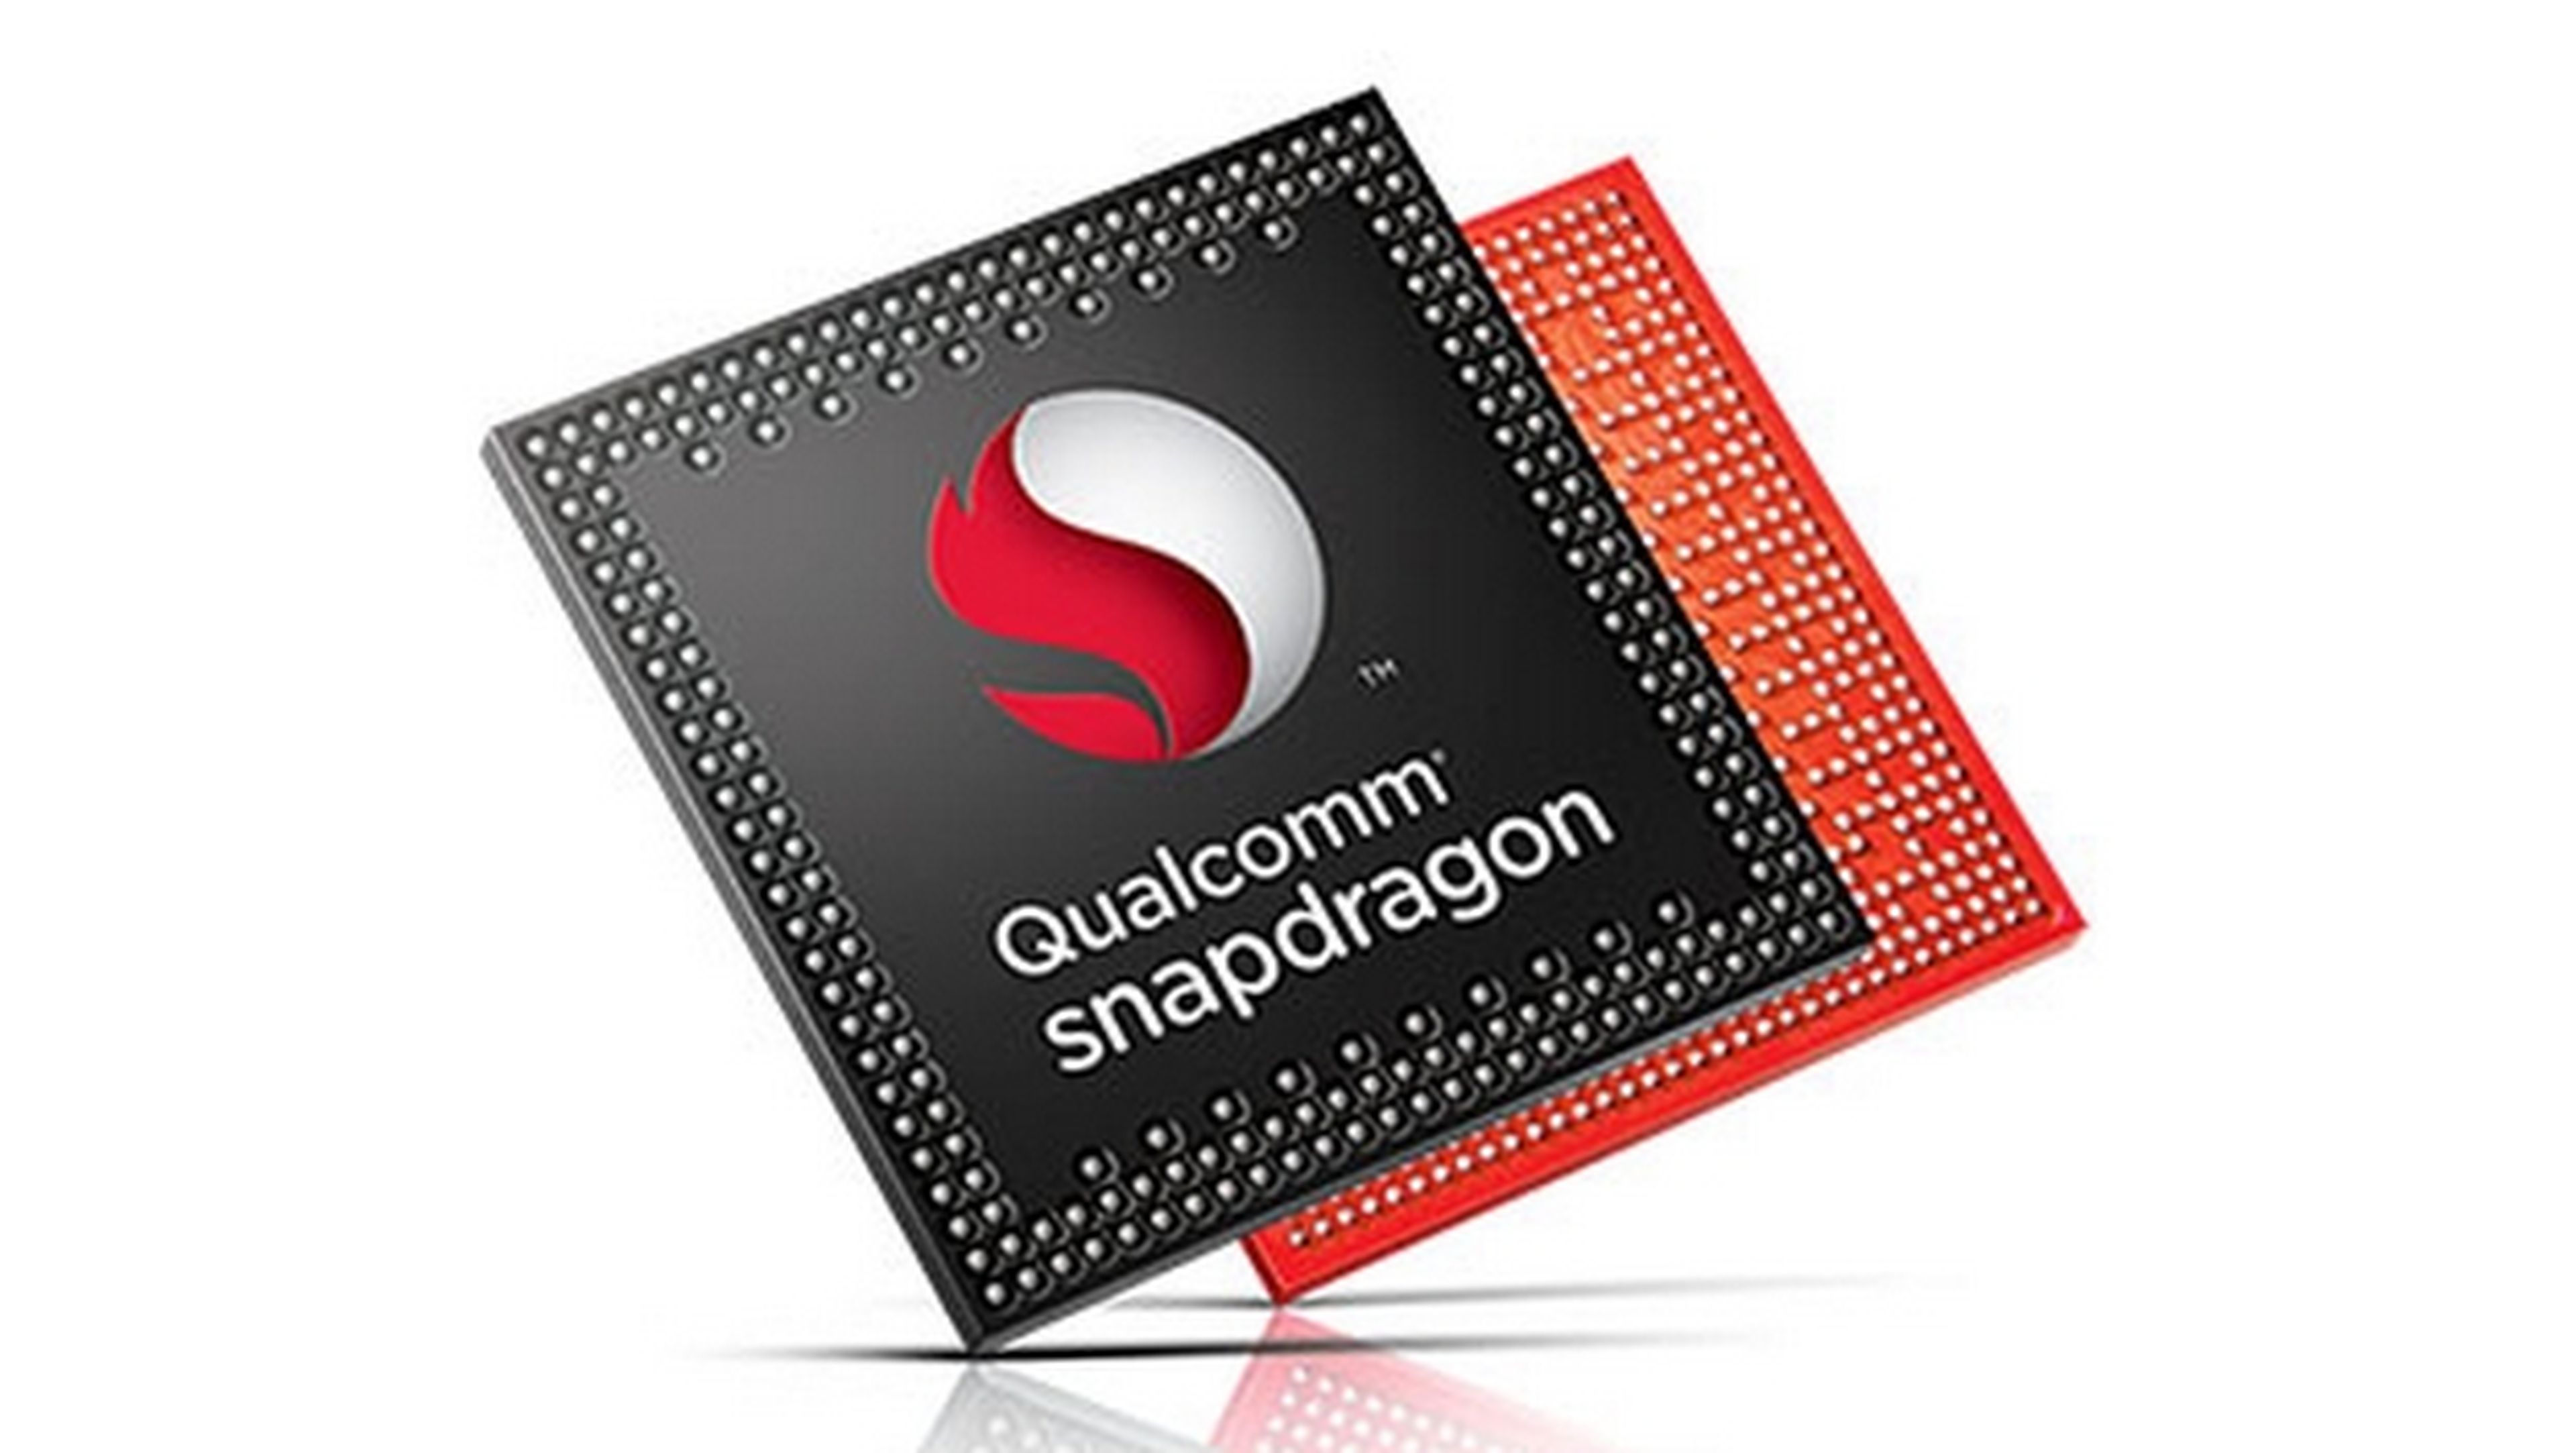 Qualcomm SnapDragon 805, el procesador móvil de 4 núcleos más rápido del mercado, en CES 2014